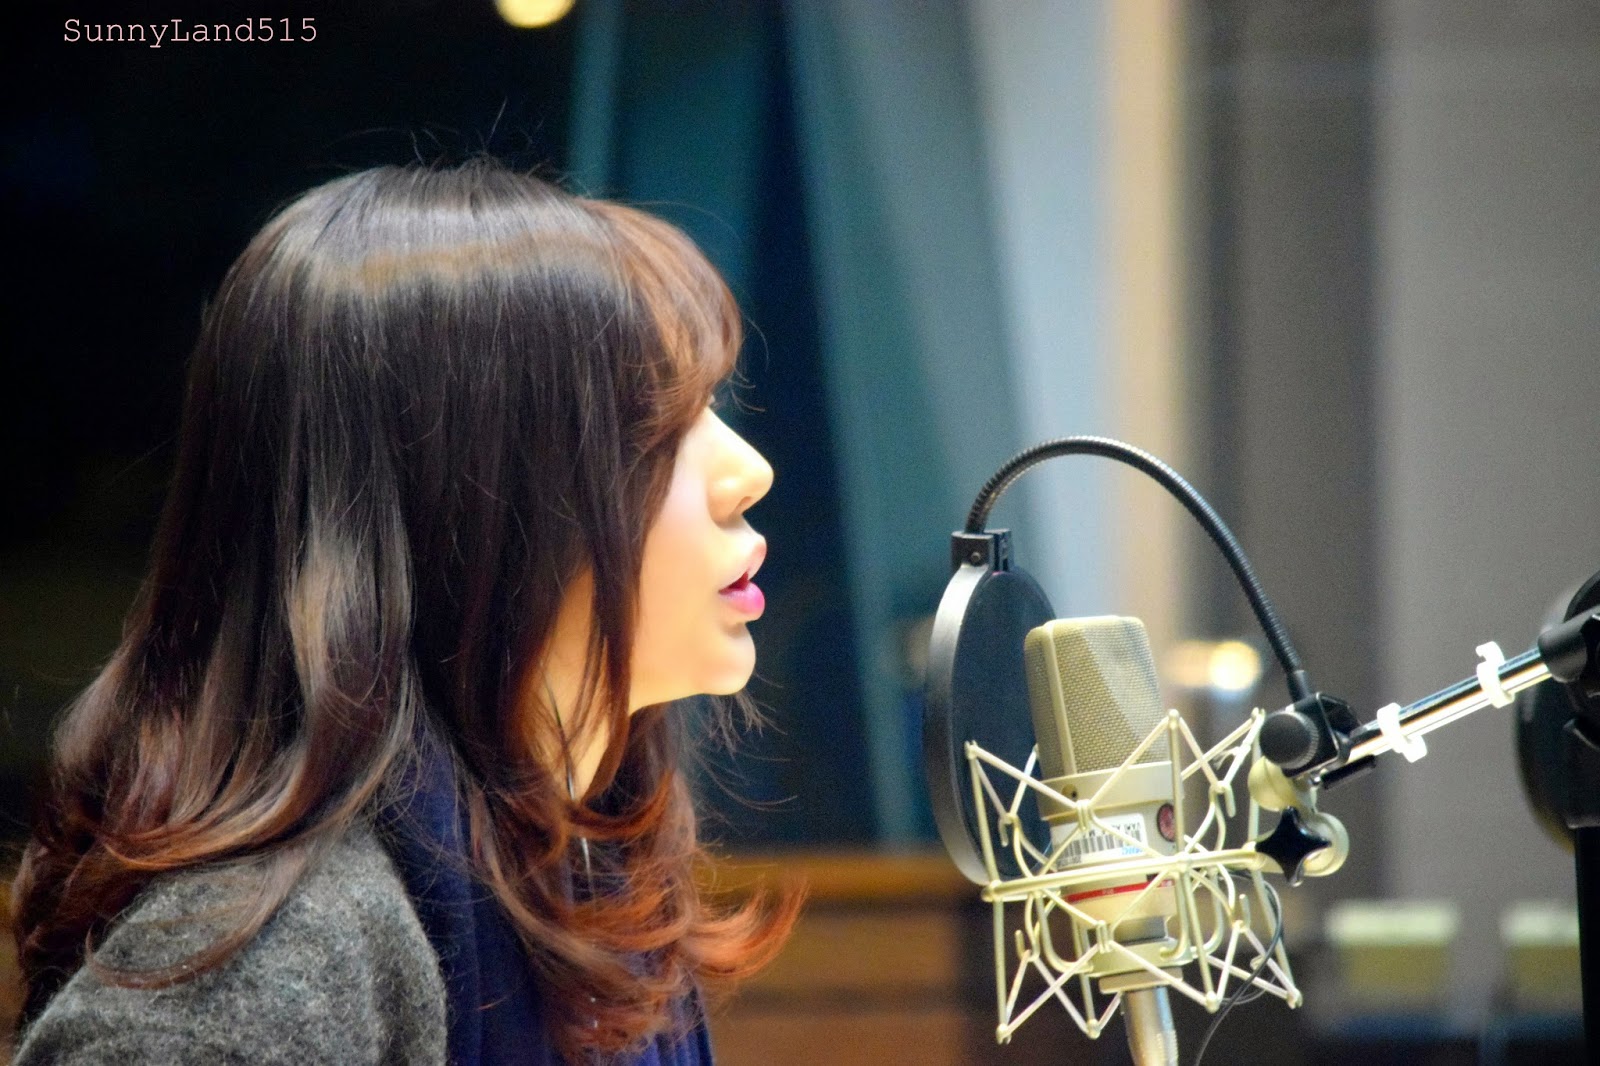 [OTHER][06-02-2015]Hình ảnh mới nhất từ DJ Sunny tại Radio MBC FM4U - "FM Date" - Page 10 DSC_0266_Fotor